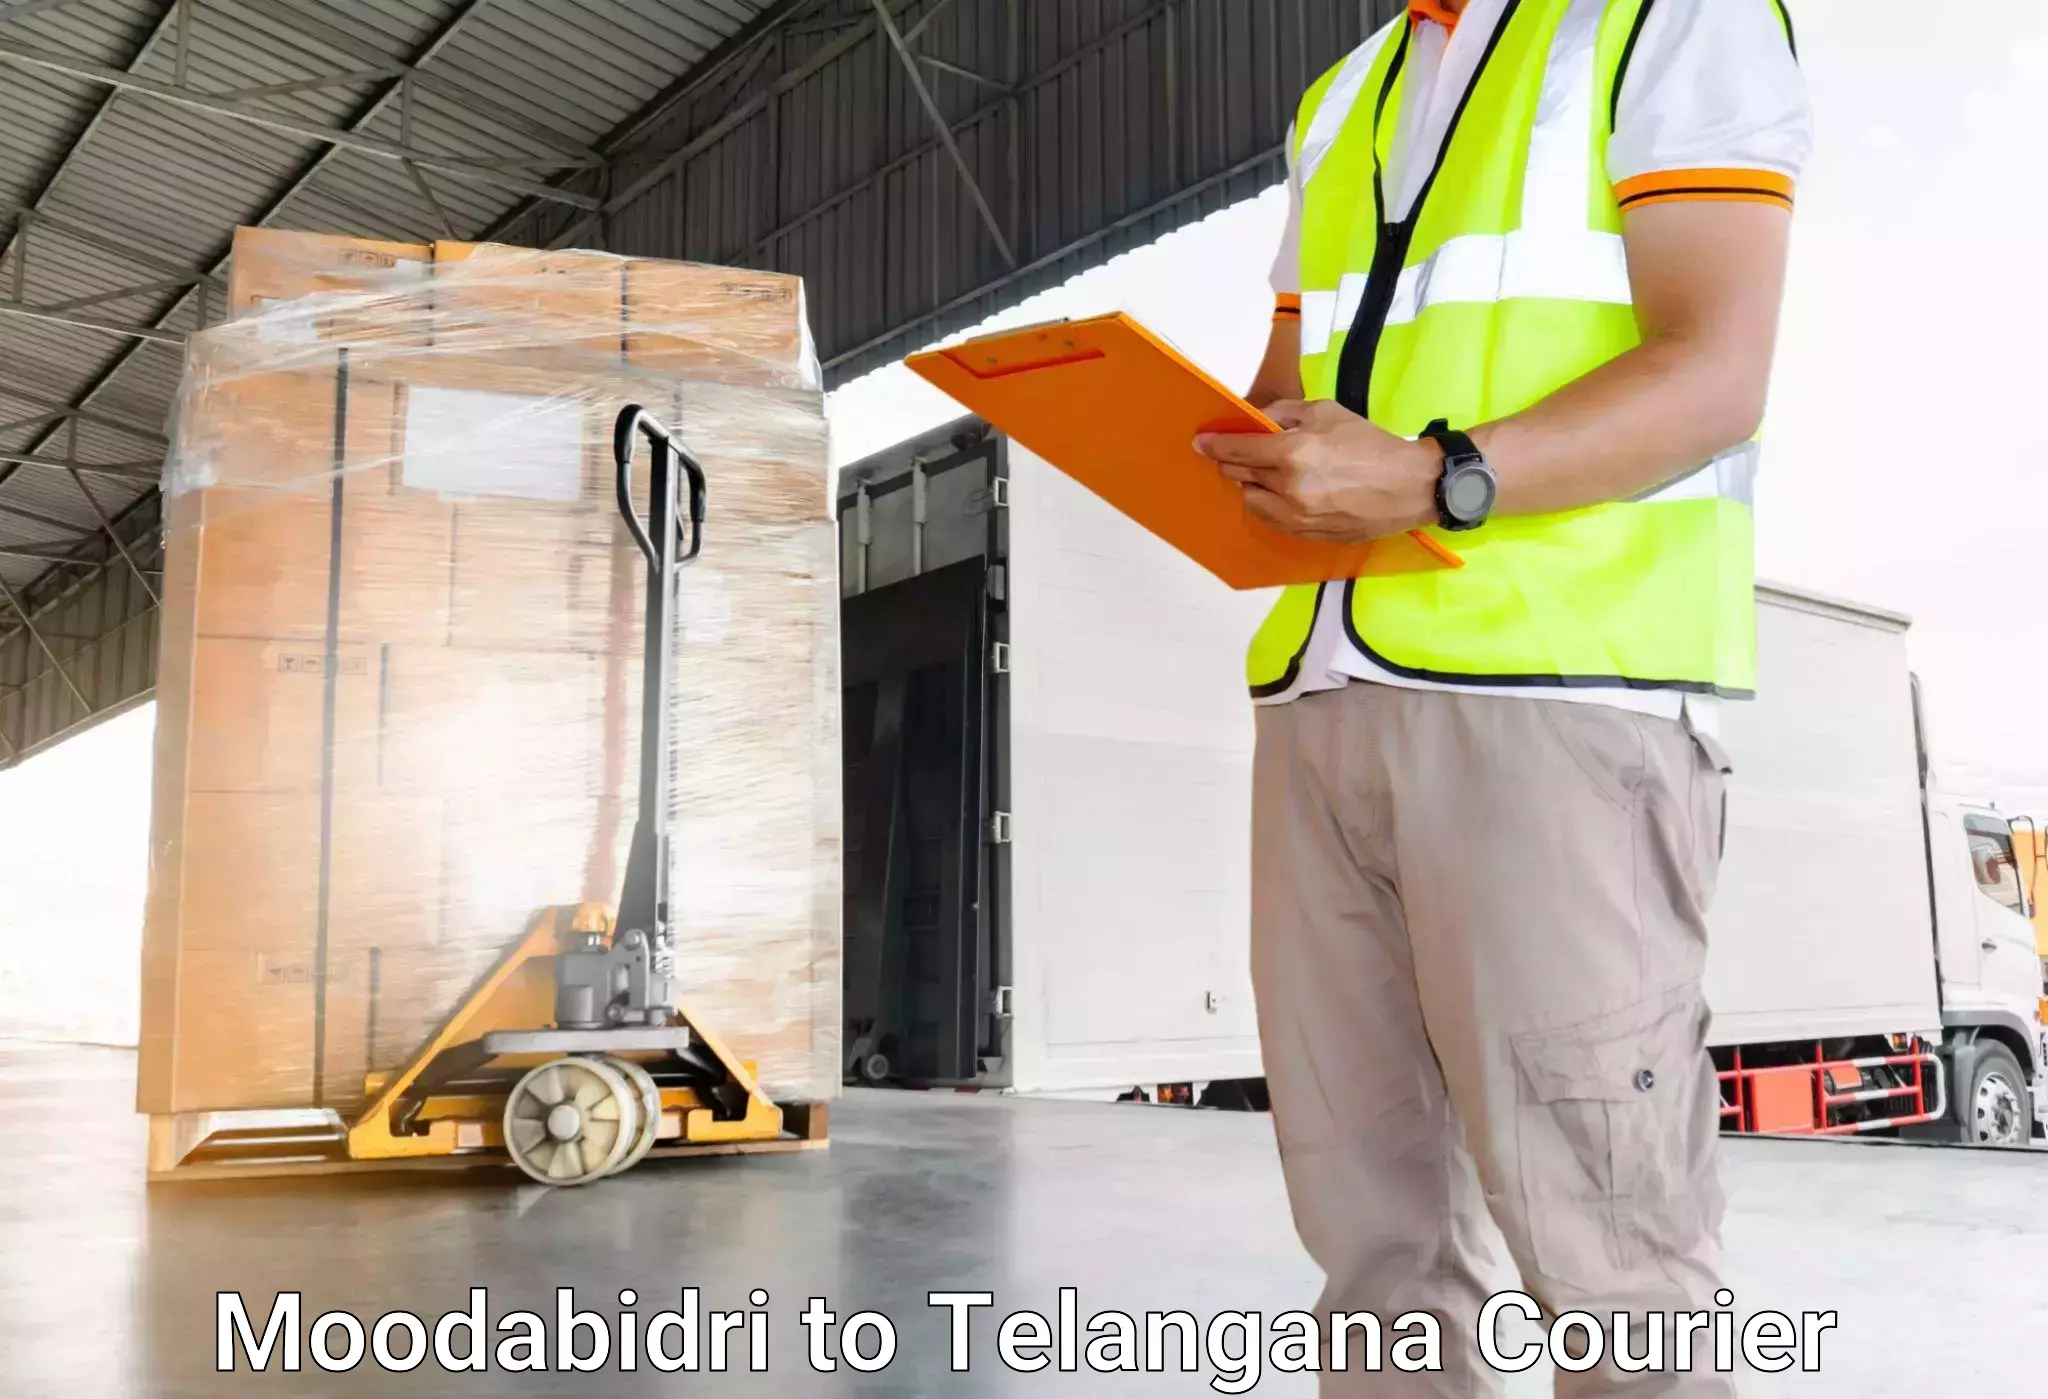 Luggage delivery optimization Moodabidri to Bijinapalle